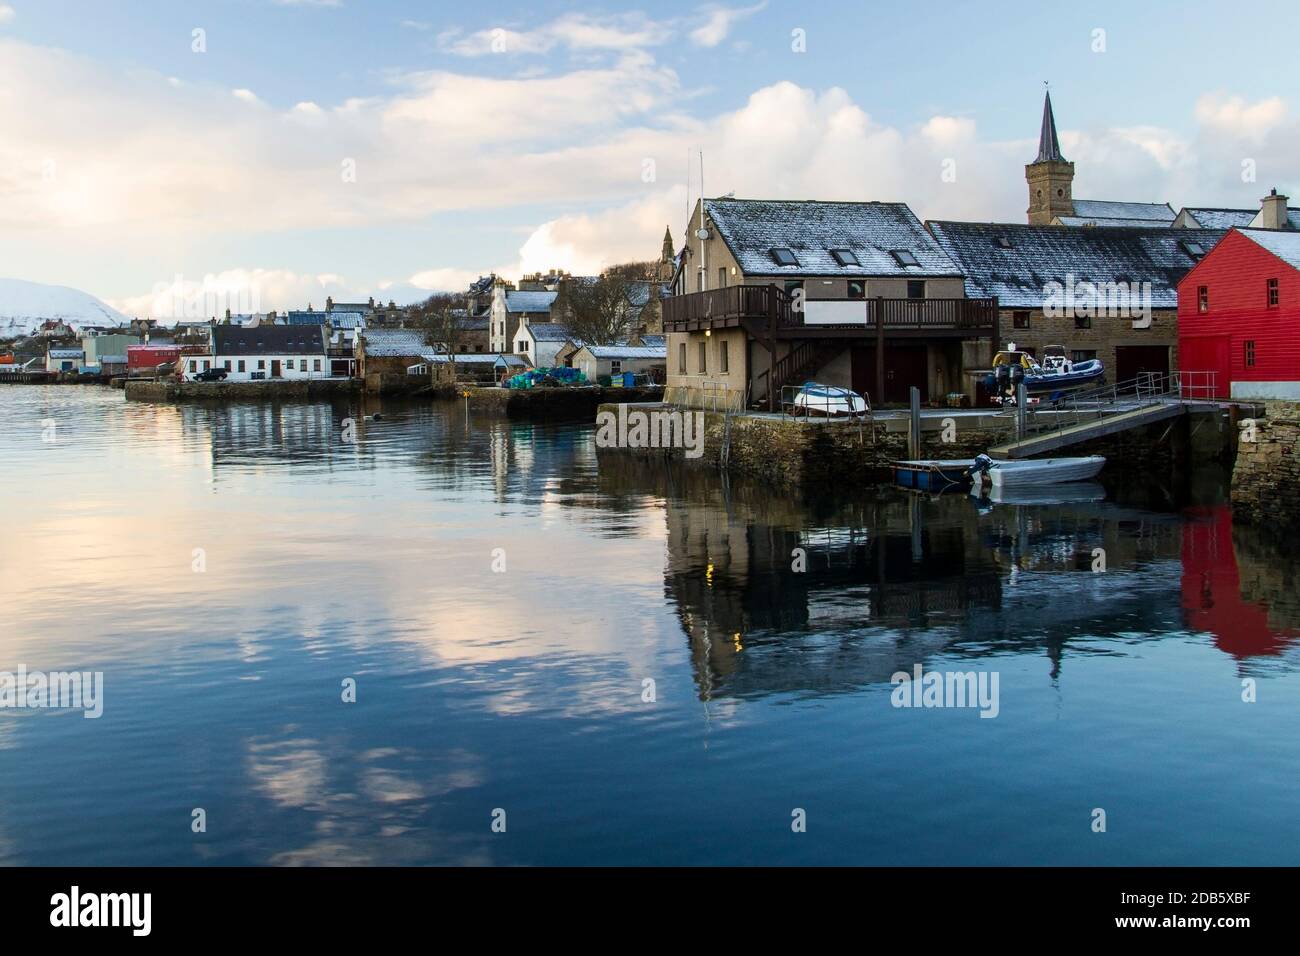 Vue sur le front de mer de la ville de pêche écossaise sur les îles Orcades dans scène hivernale avec neige Banque D'Images